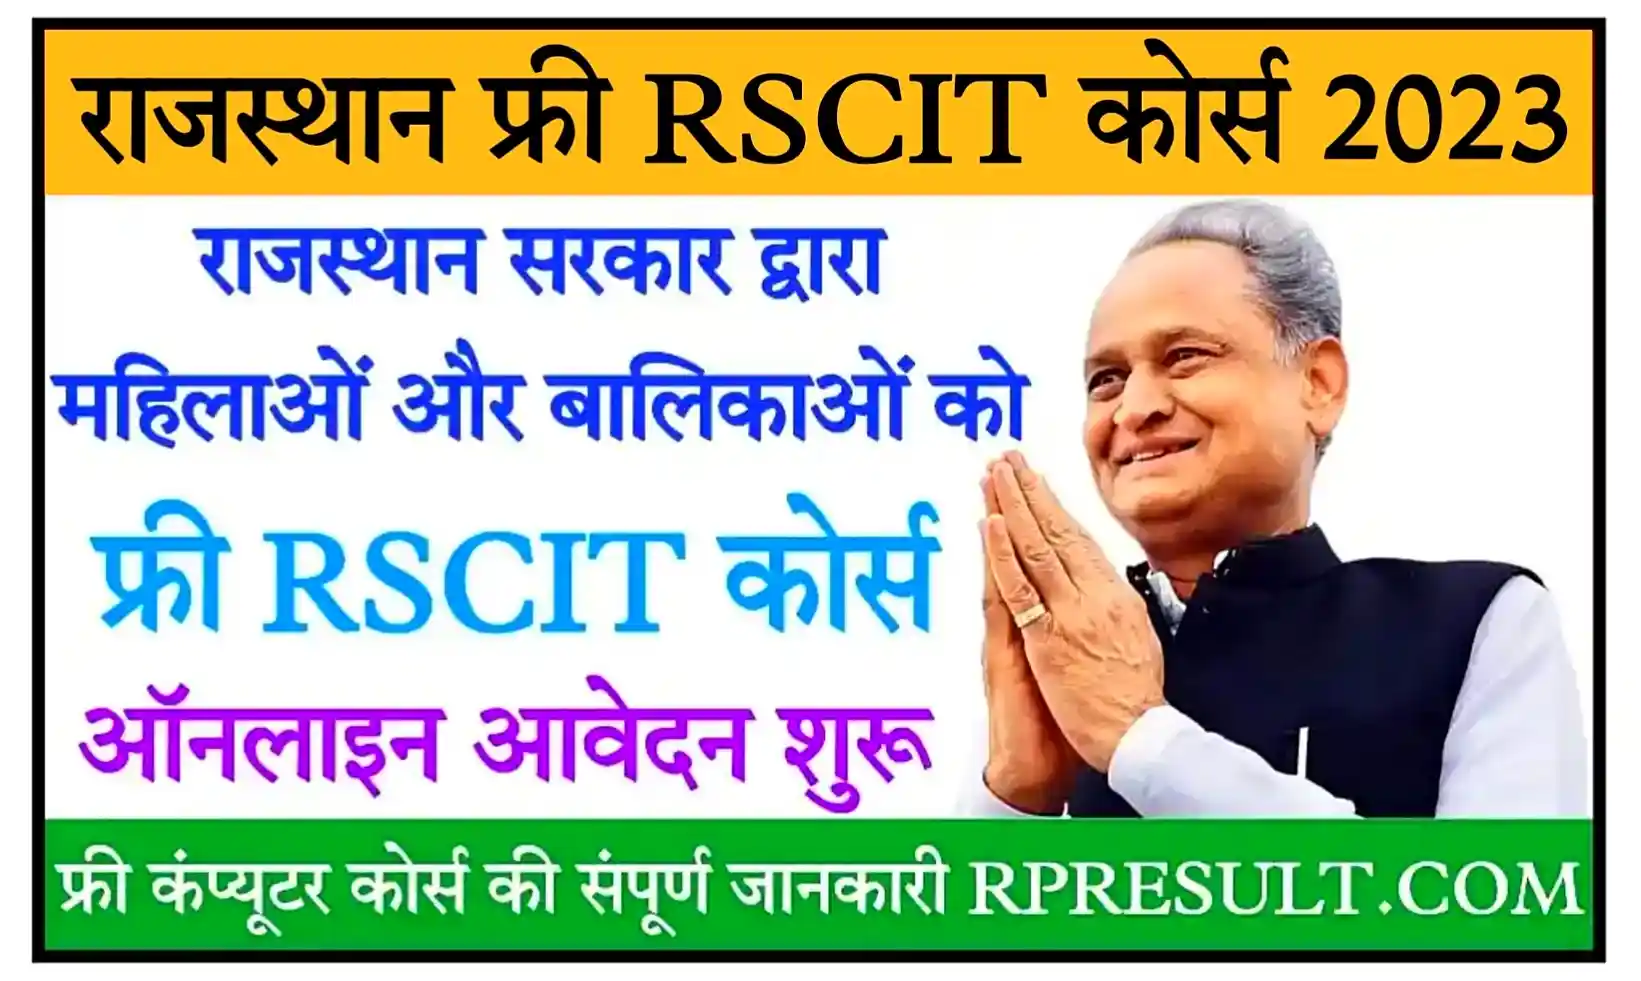 Rajasthan Free RSCIT Course 2023 राजस्थान सरकार द्वारा महिलाओं और छात्राओं को फ्री कंप्यूटर कोर्स, ऑनलाइन आवेदन शुरू